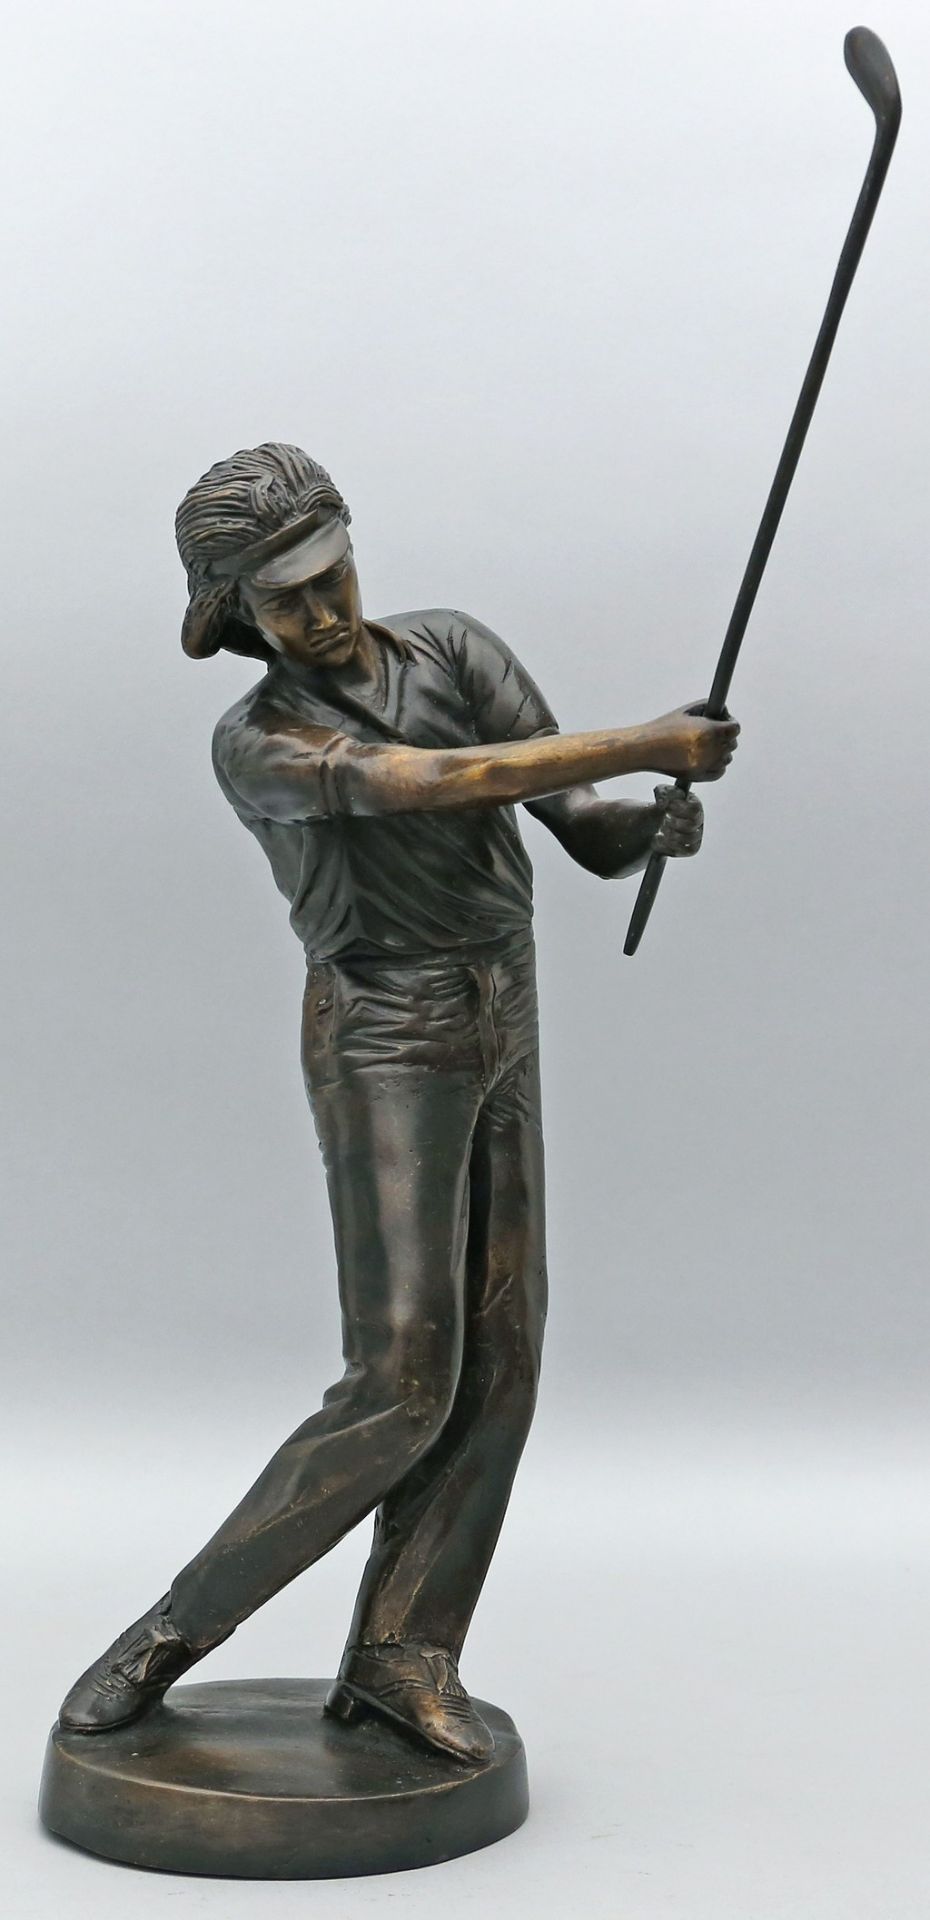 Skulptur eines Golfspielers. - Bild 2 aus 2